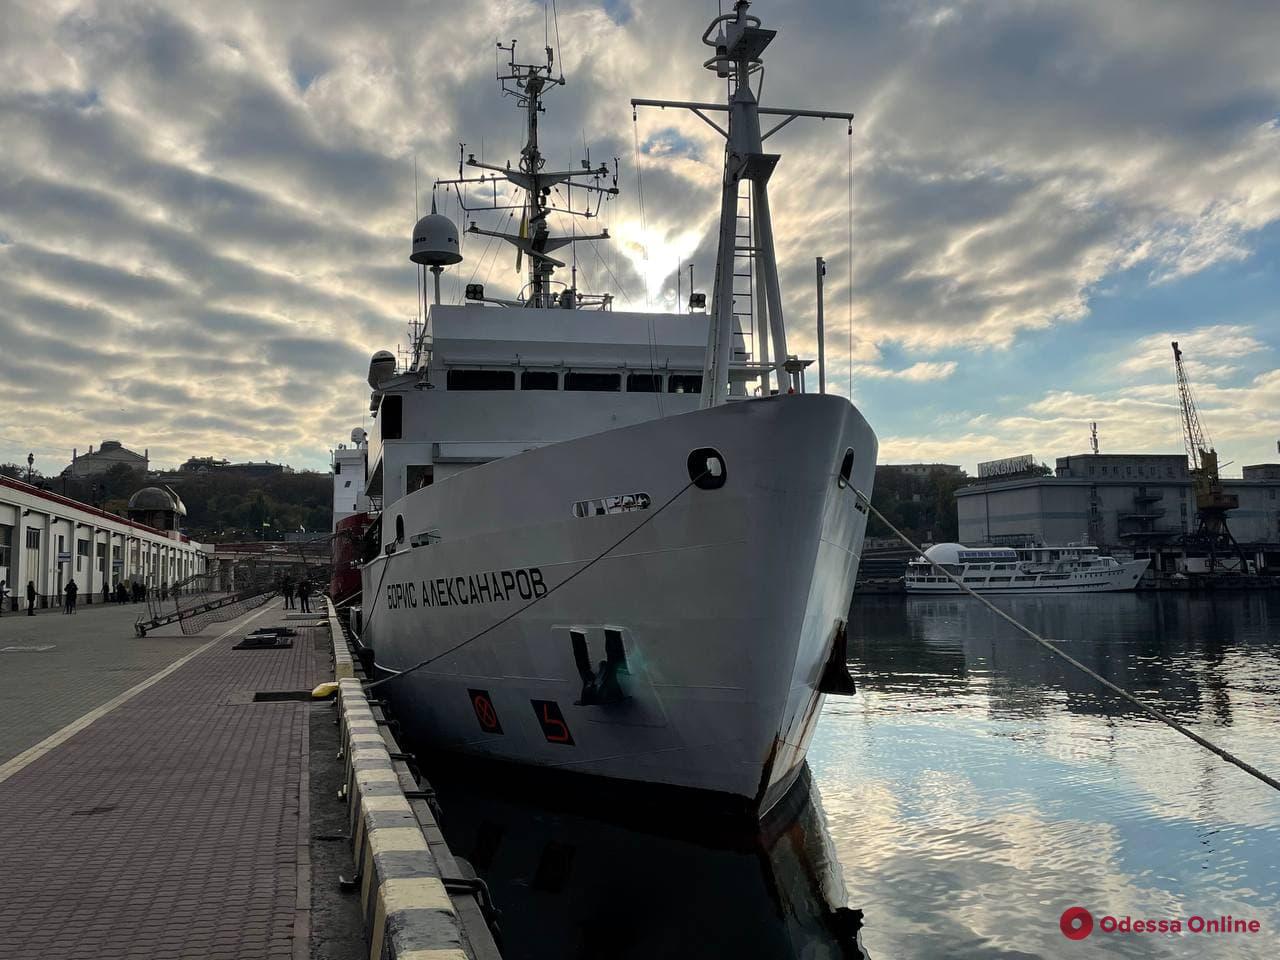 Научно-исследовательское судно «Бельгика» переименовали в честь погибшего при пожаре на Троицкой директора Института морской биологии